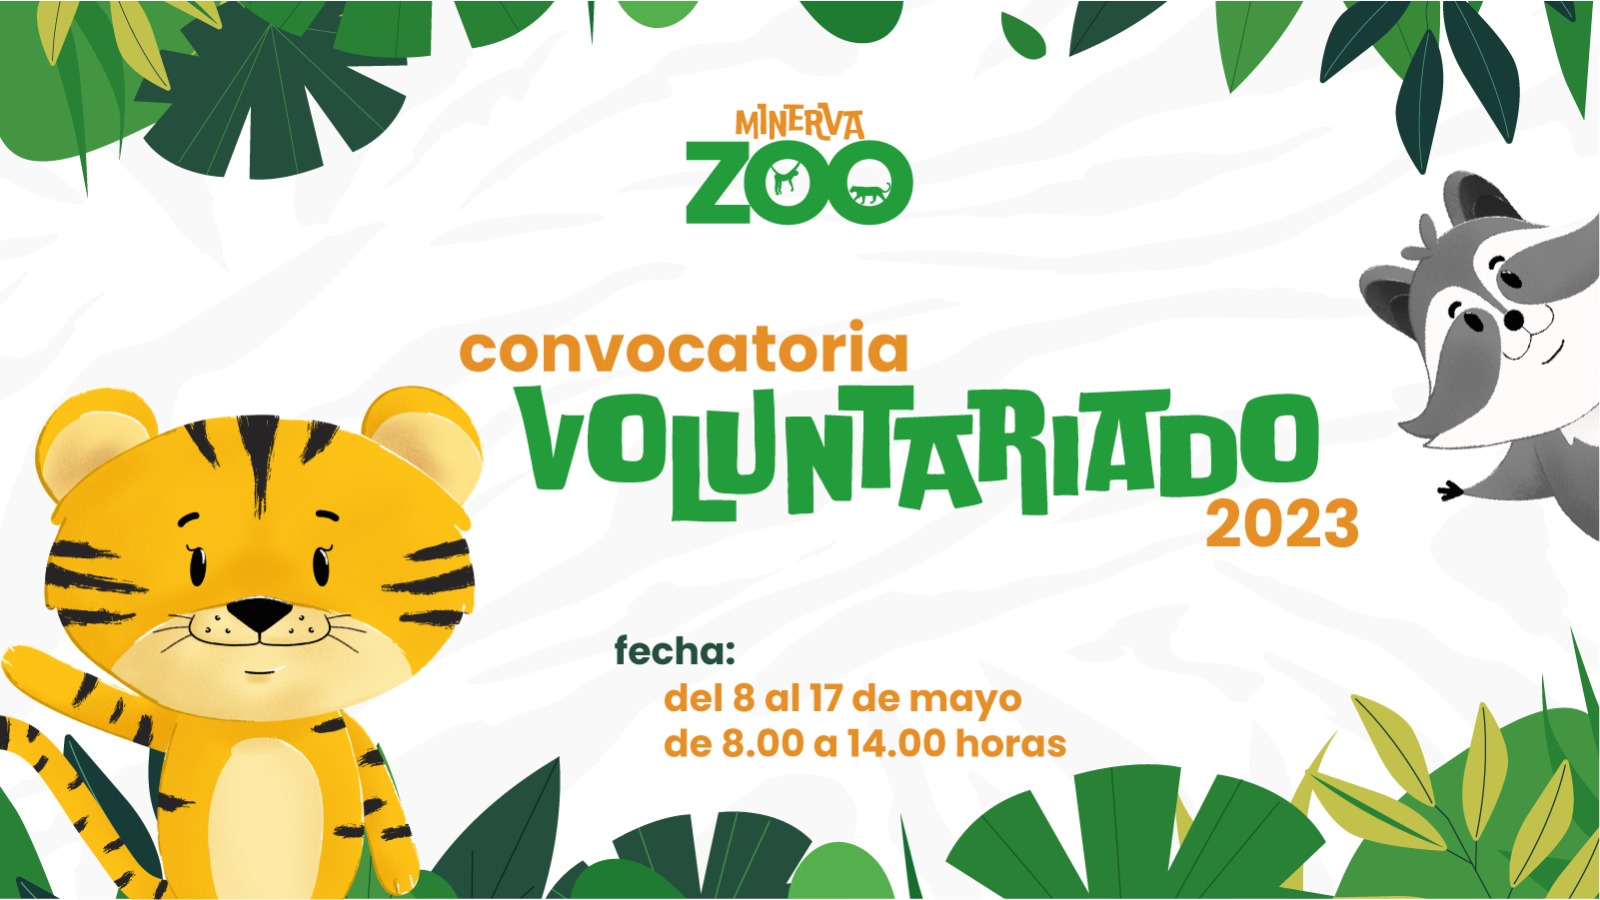 Convocatoria para voluntariado Zoológico Minerva